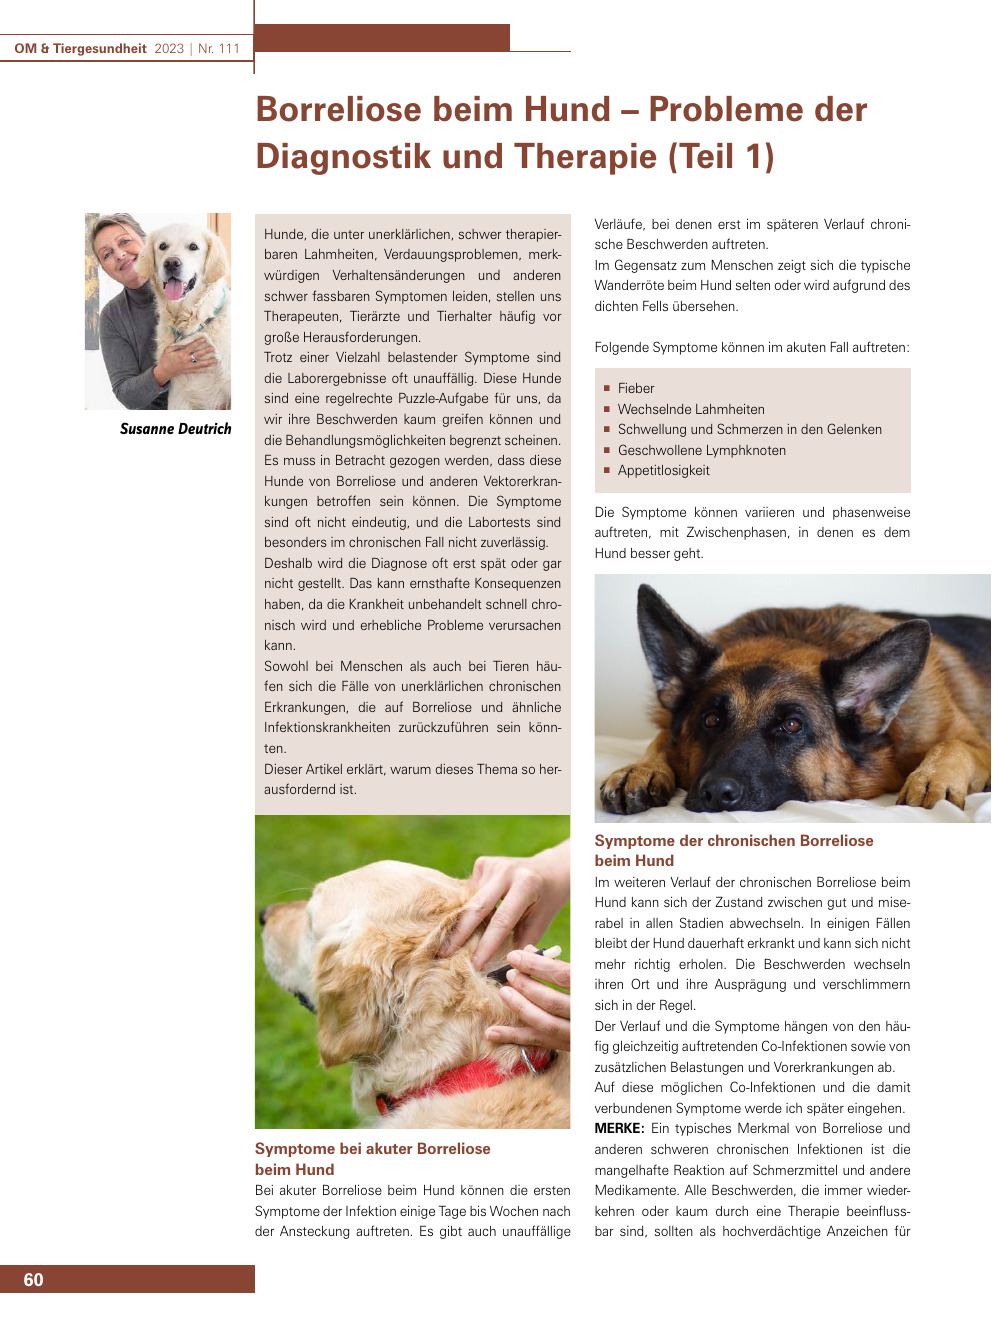 Borreliose beim Hund – Probleme der Diagnostik und Therapie (Teil 1)